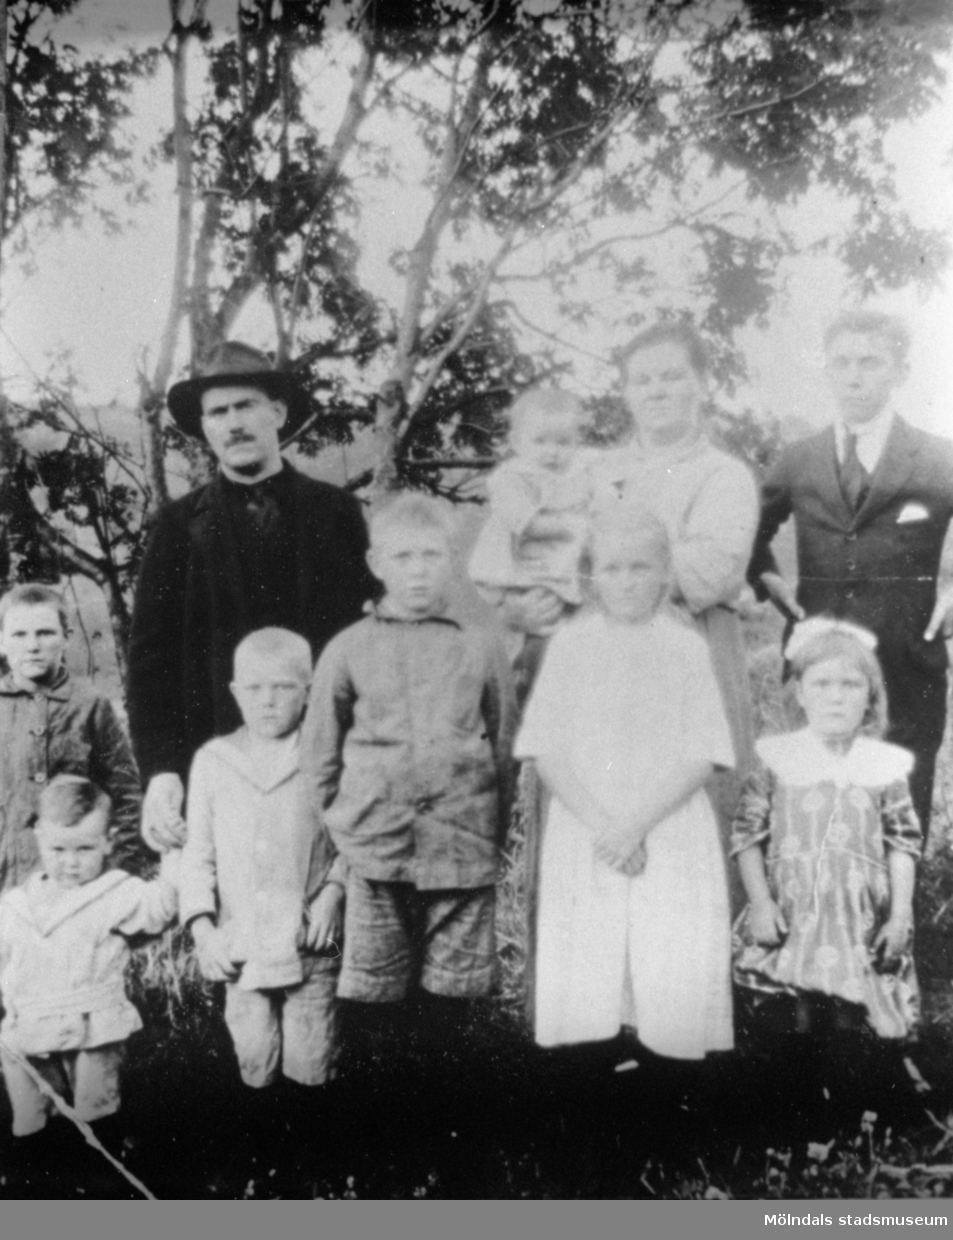 Familjen Törnsson från Krokslätt. Samtliga i familjen, förutom yngste sonen på armen, arbetade på Krokslätts fabriker.